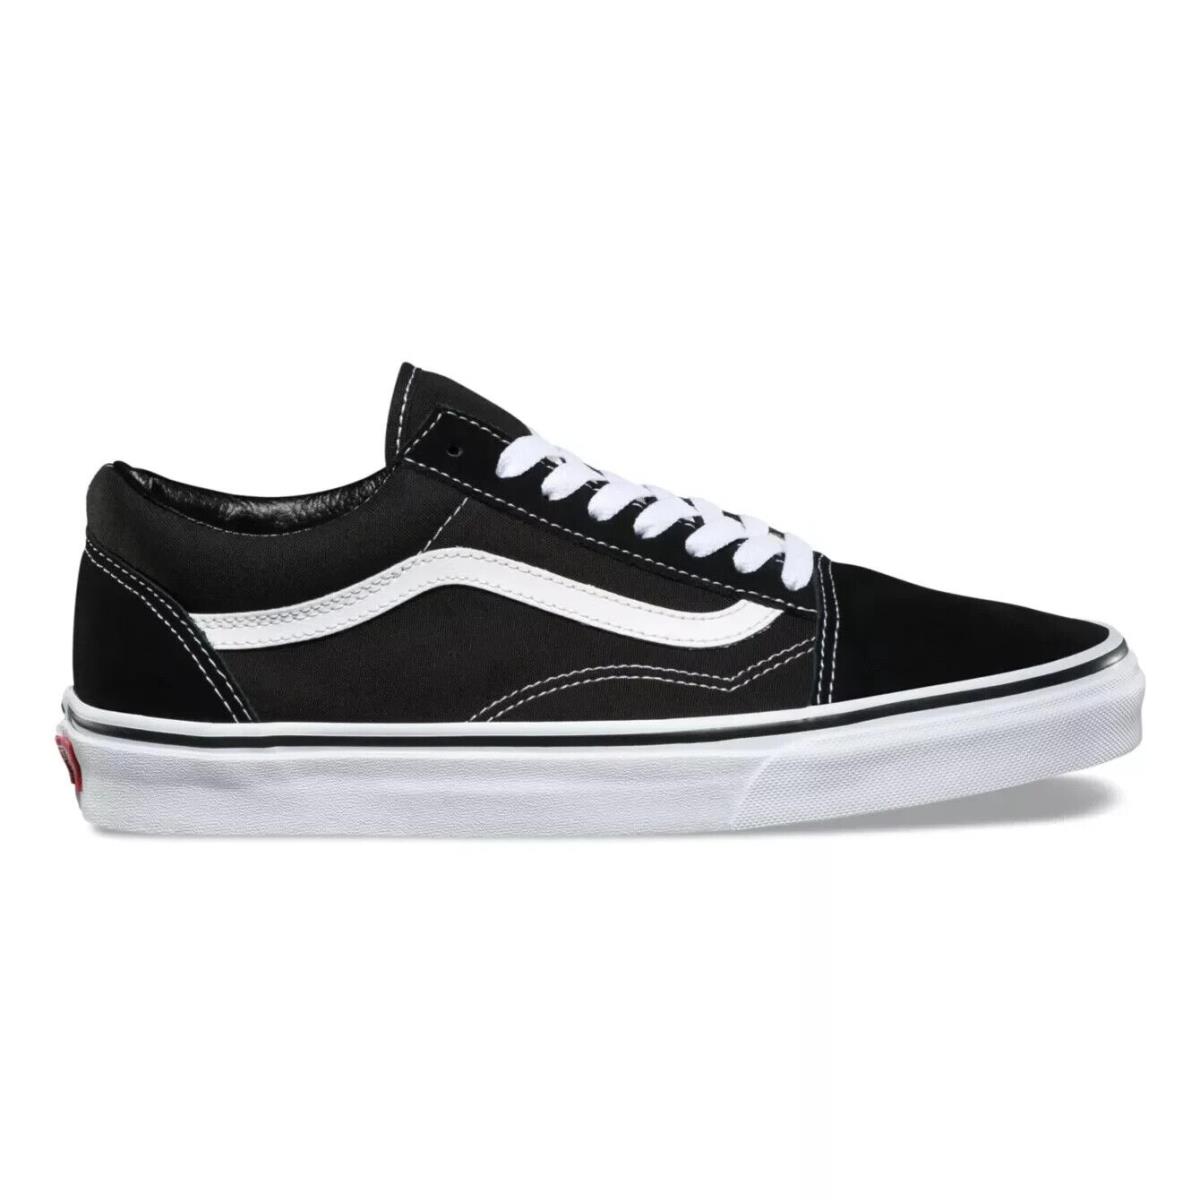 VN000D3HY281 Vans Men`s UA Old Skool Black White Sneakers